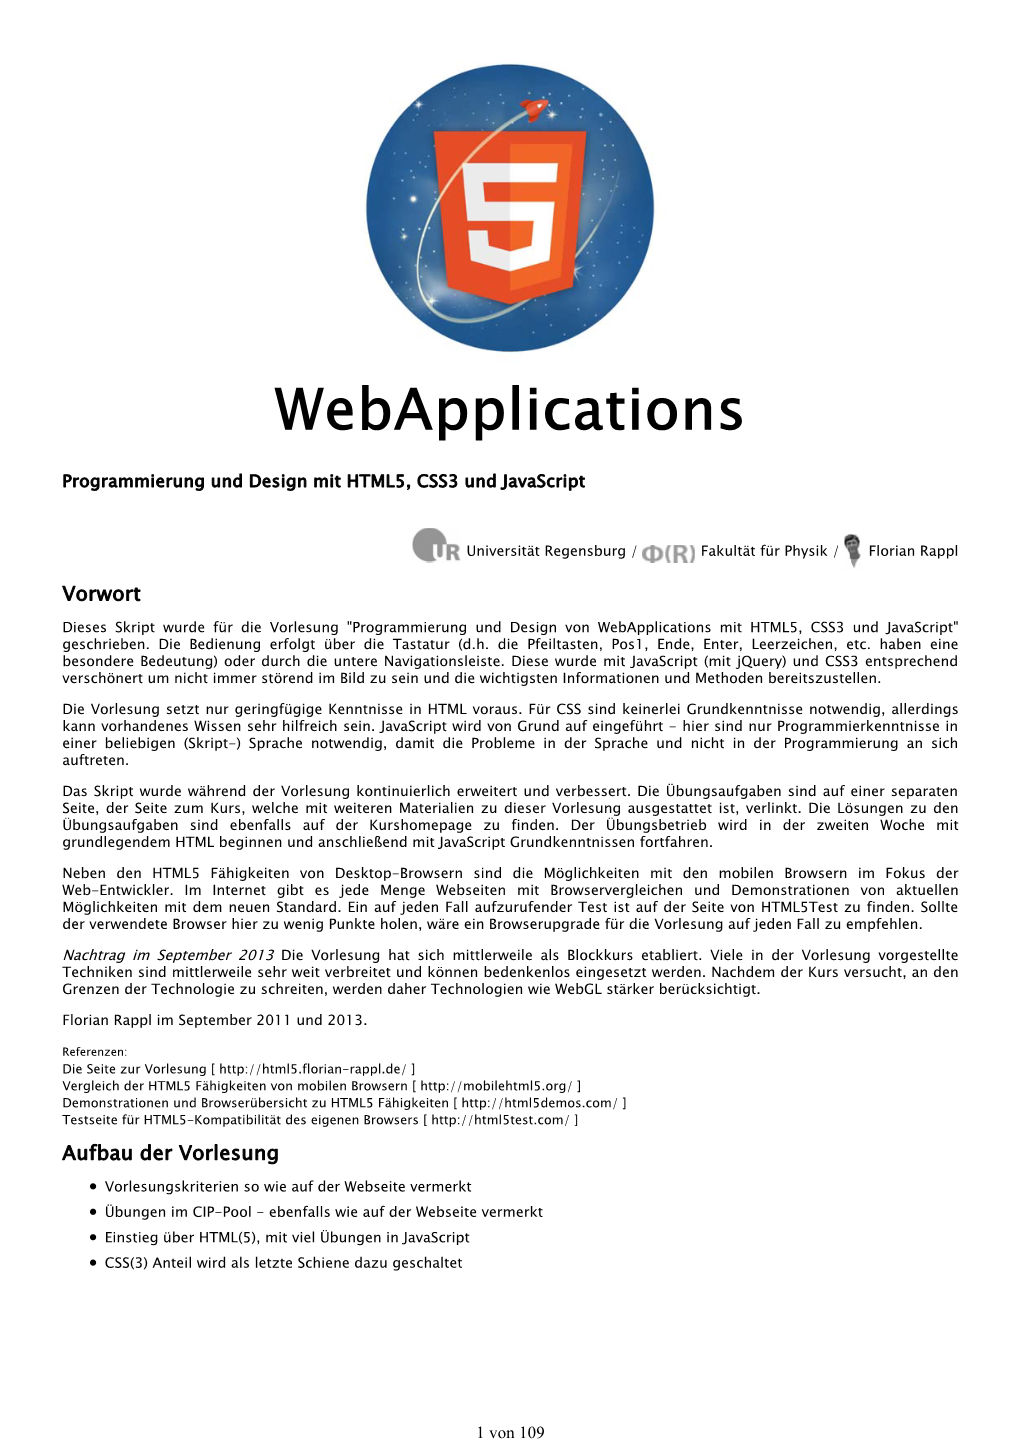 Webapplications Mit HTML5, CSS3 Und Javascript" Geschrieben